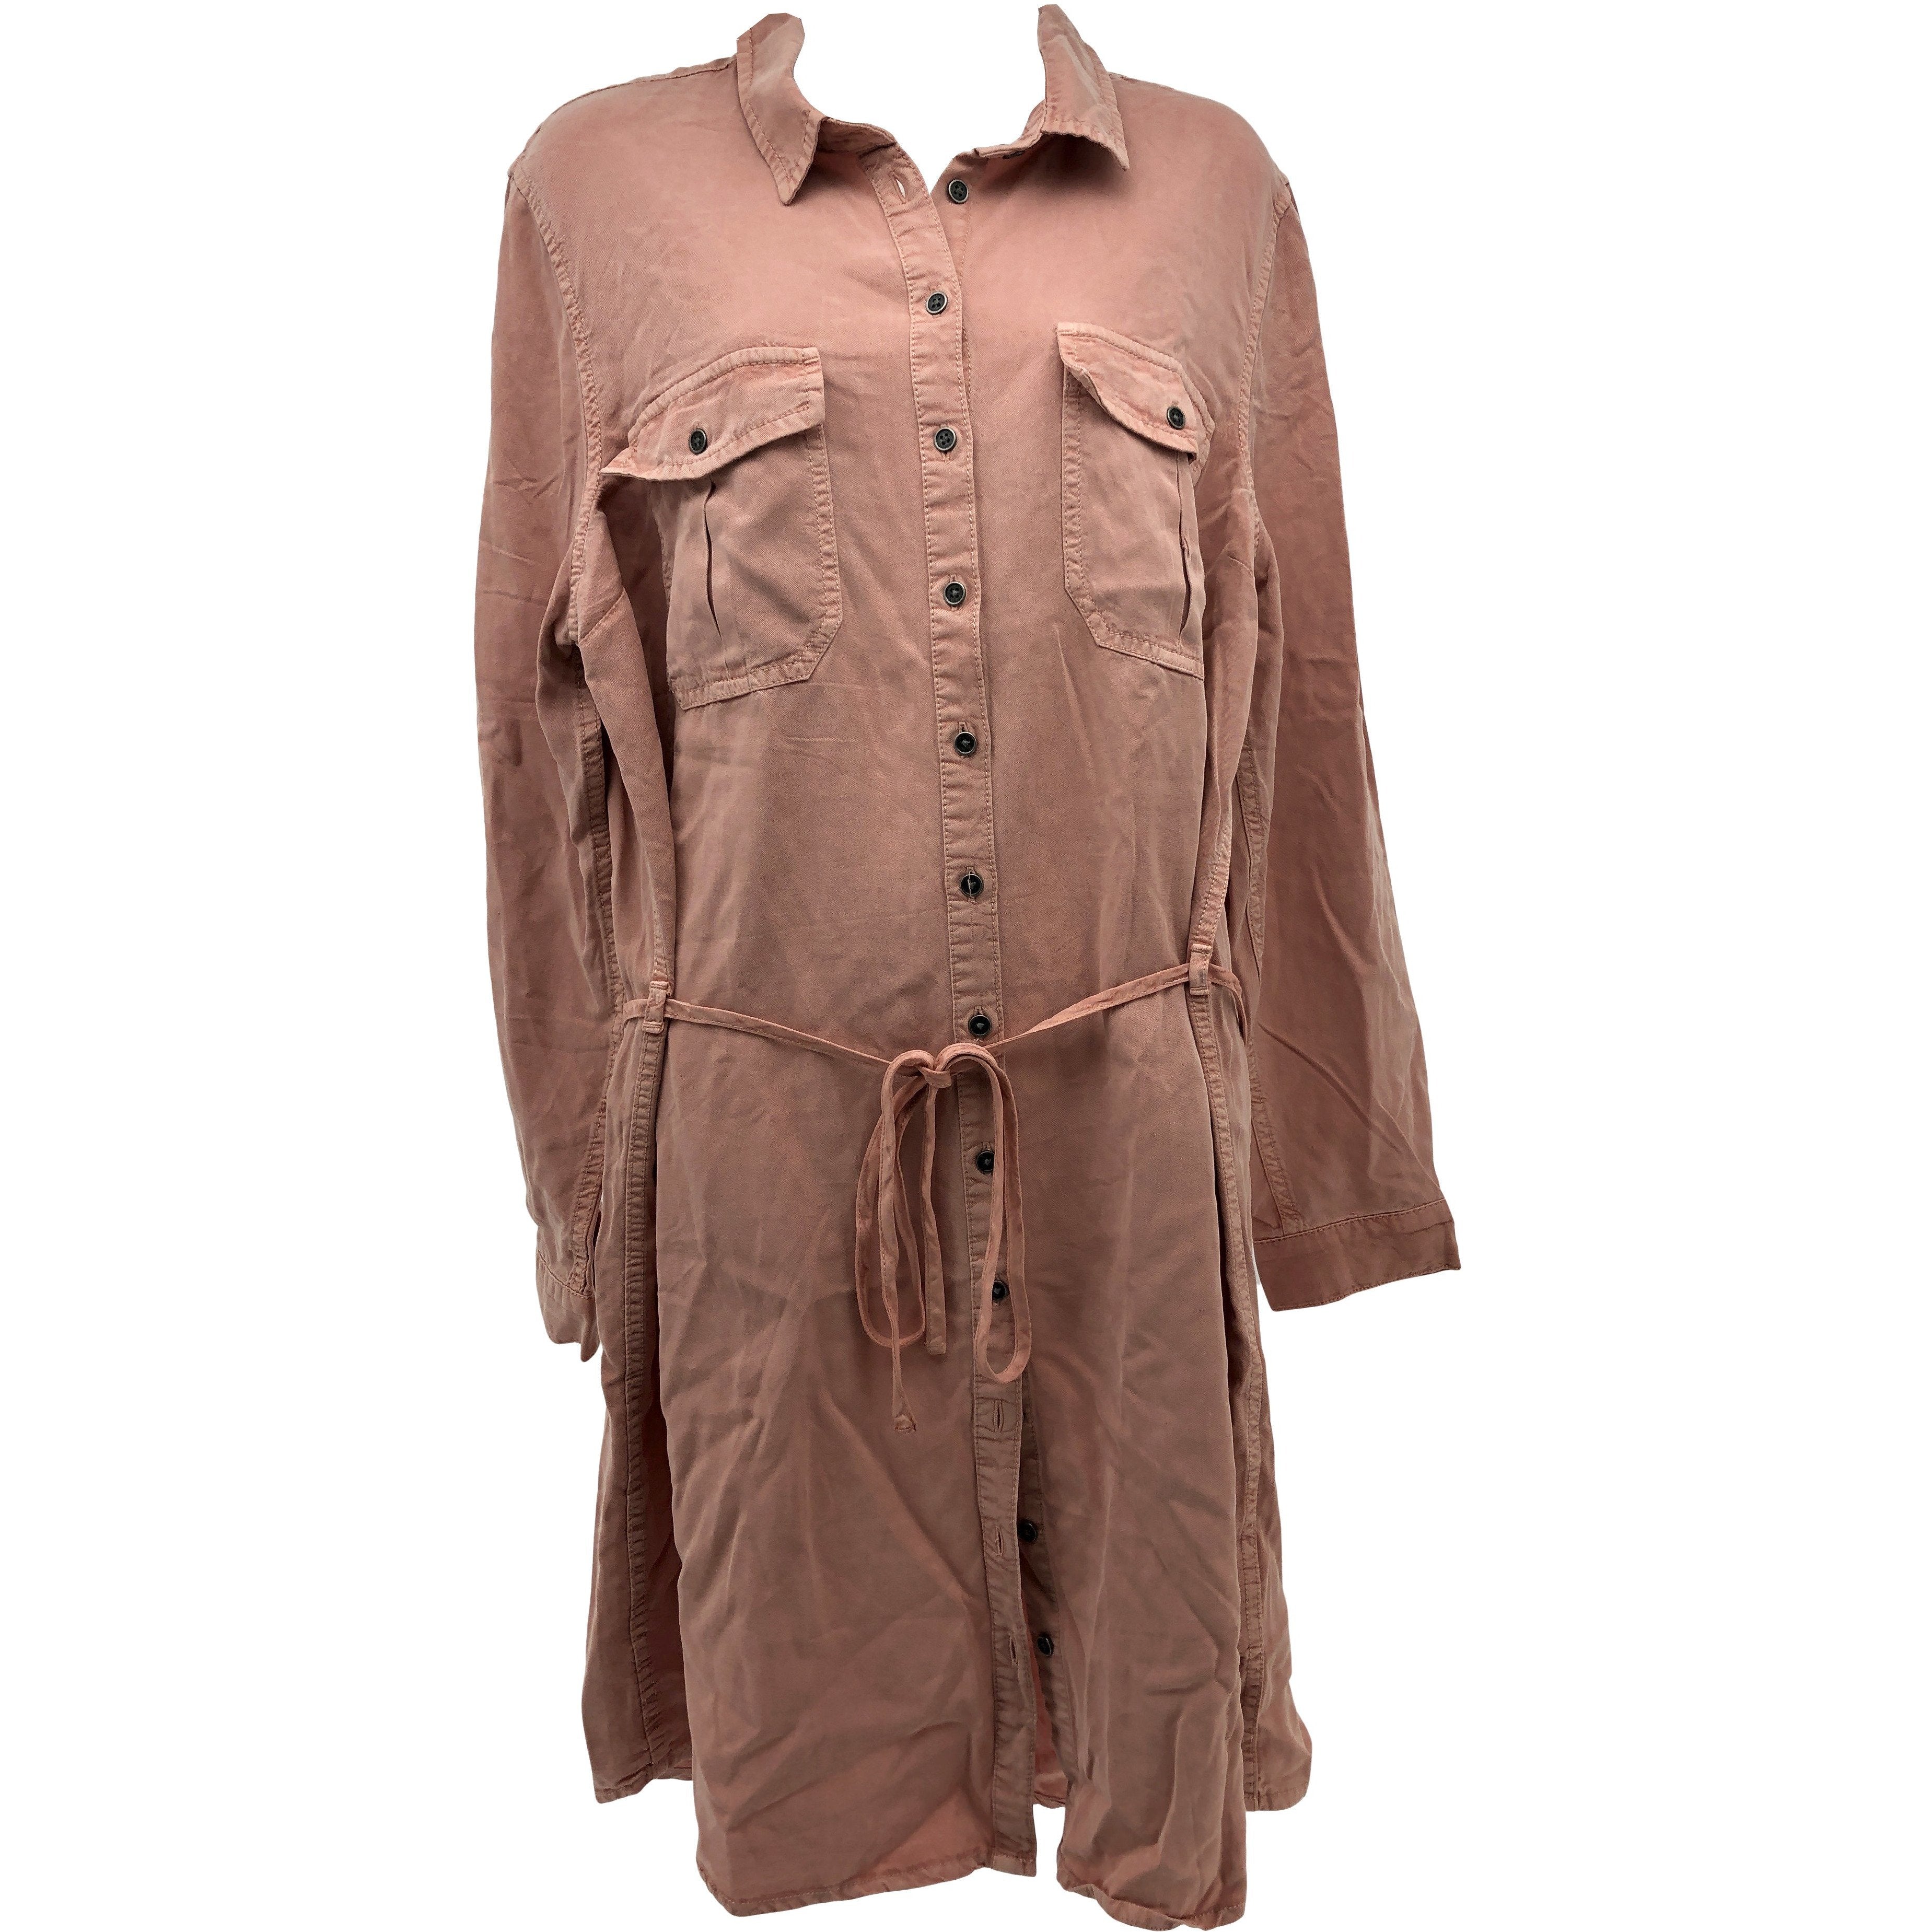 Parasuco Women's Denim Dress / Button Up / Light Pink / Size Medium